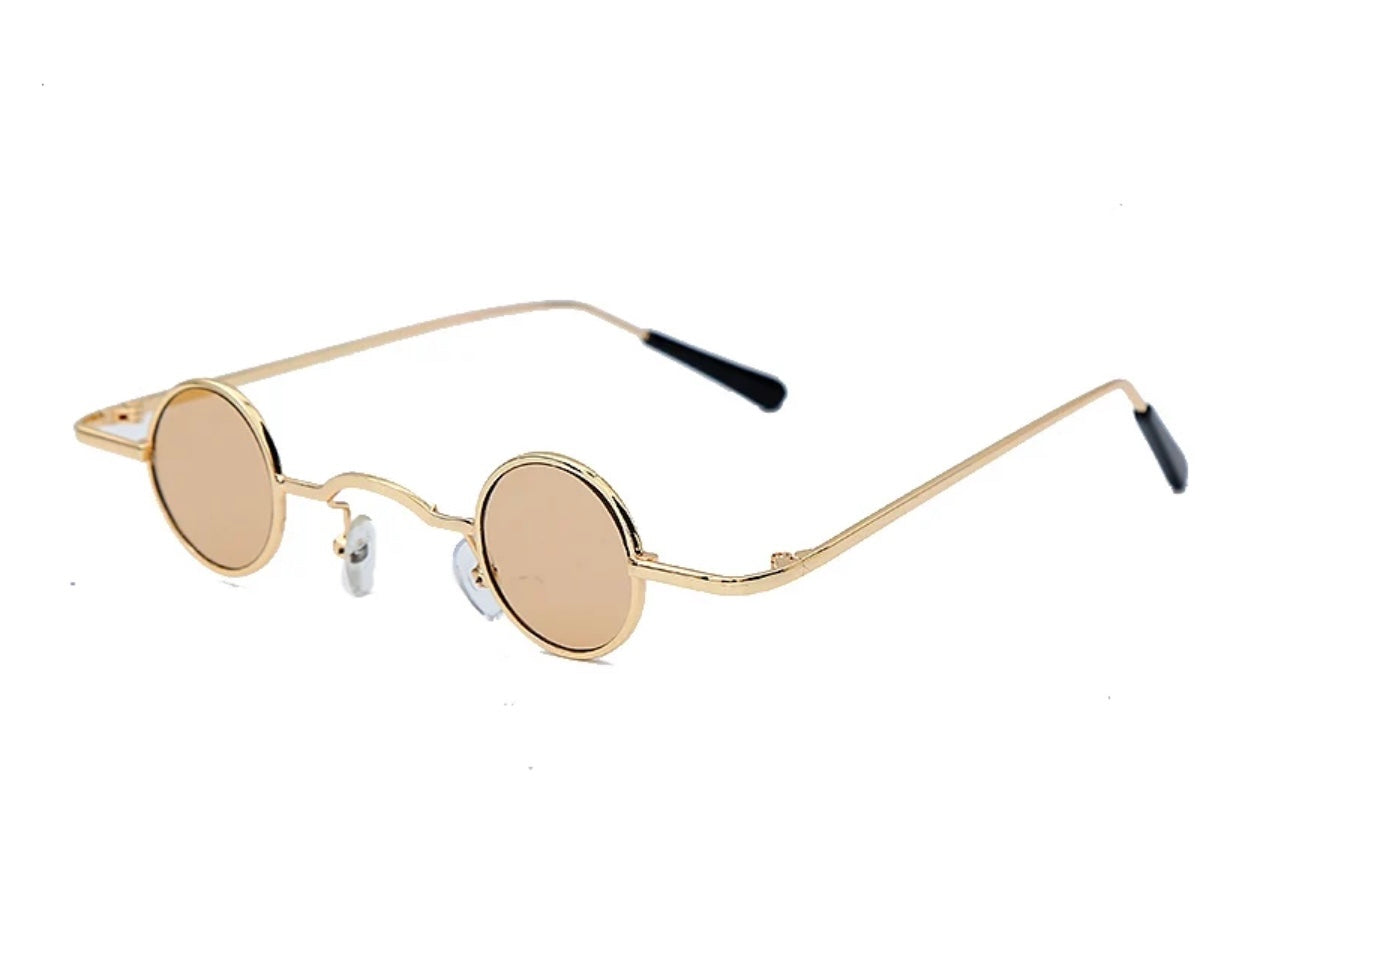 Small Steampunk Sunglasses